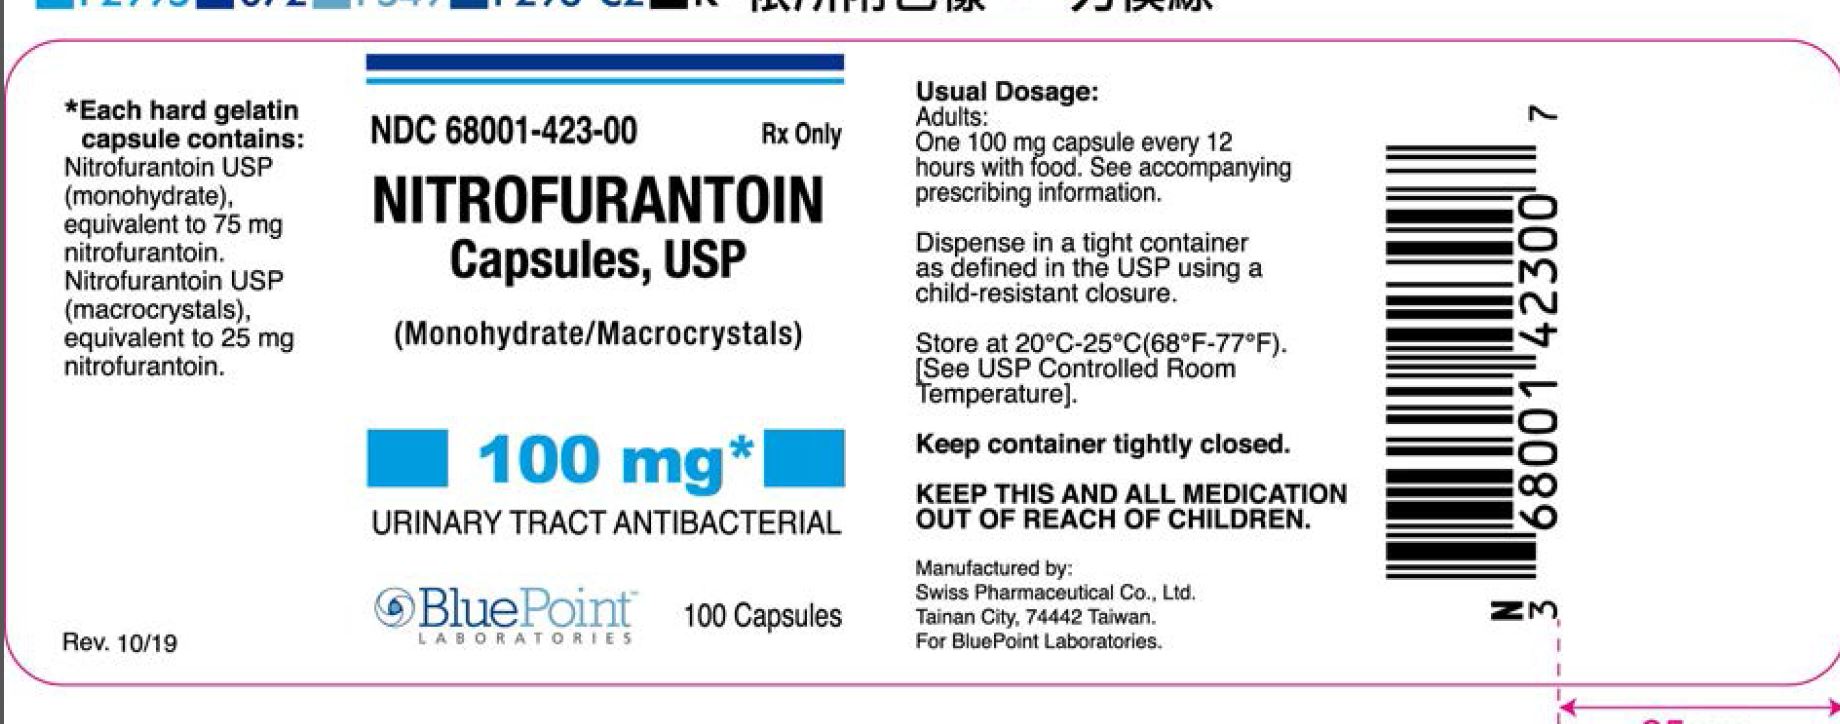 Nitrorurantoin Capsules 100 mg rev 10/19